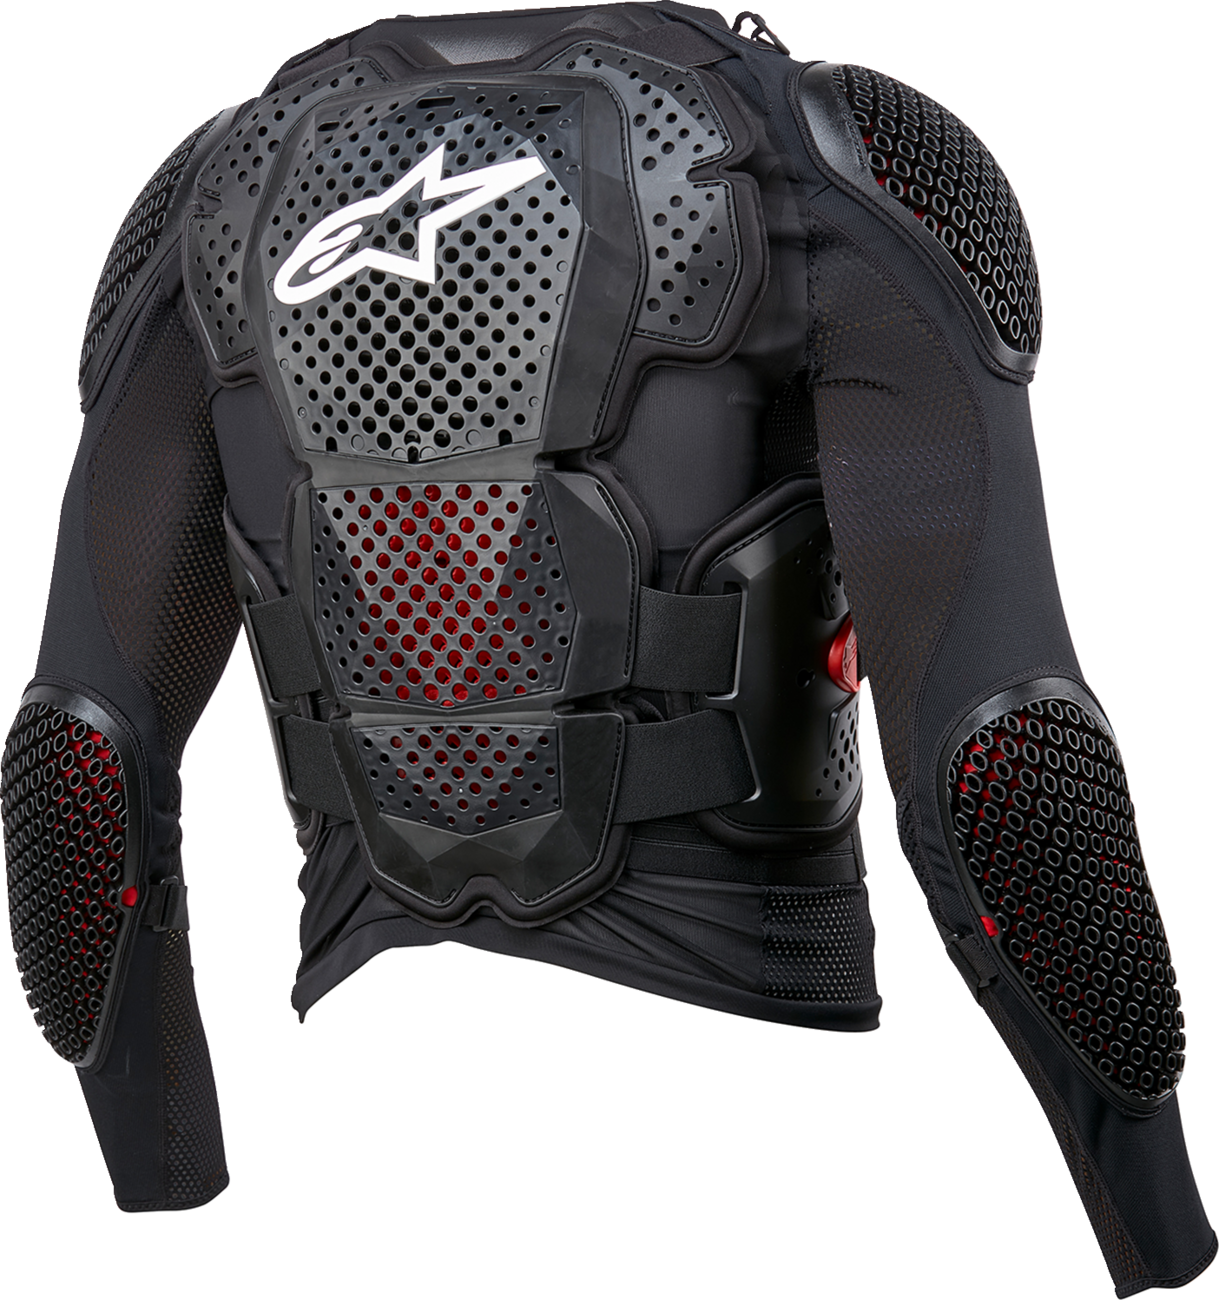 ALPINESTARS Bionic Tech v3 Jacket - Black/White/Red - Medium 6506524-123-M